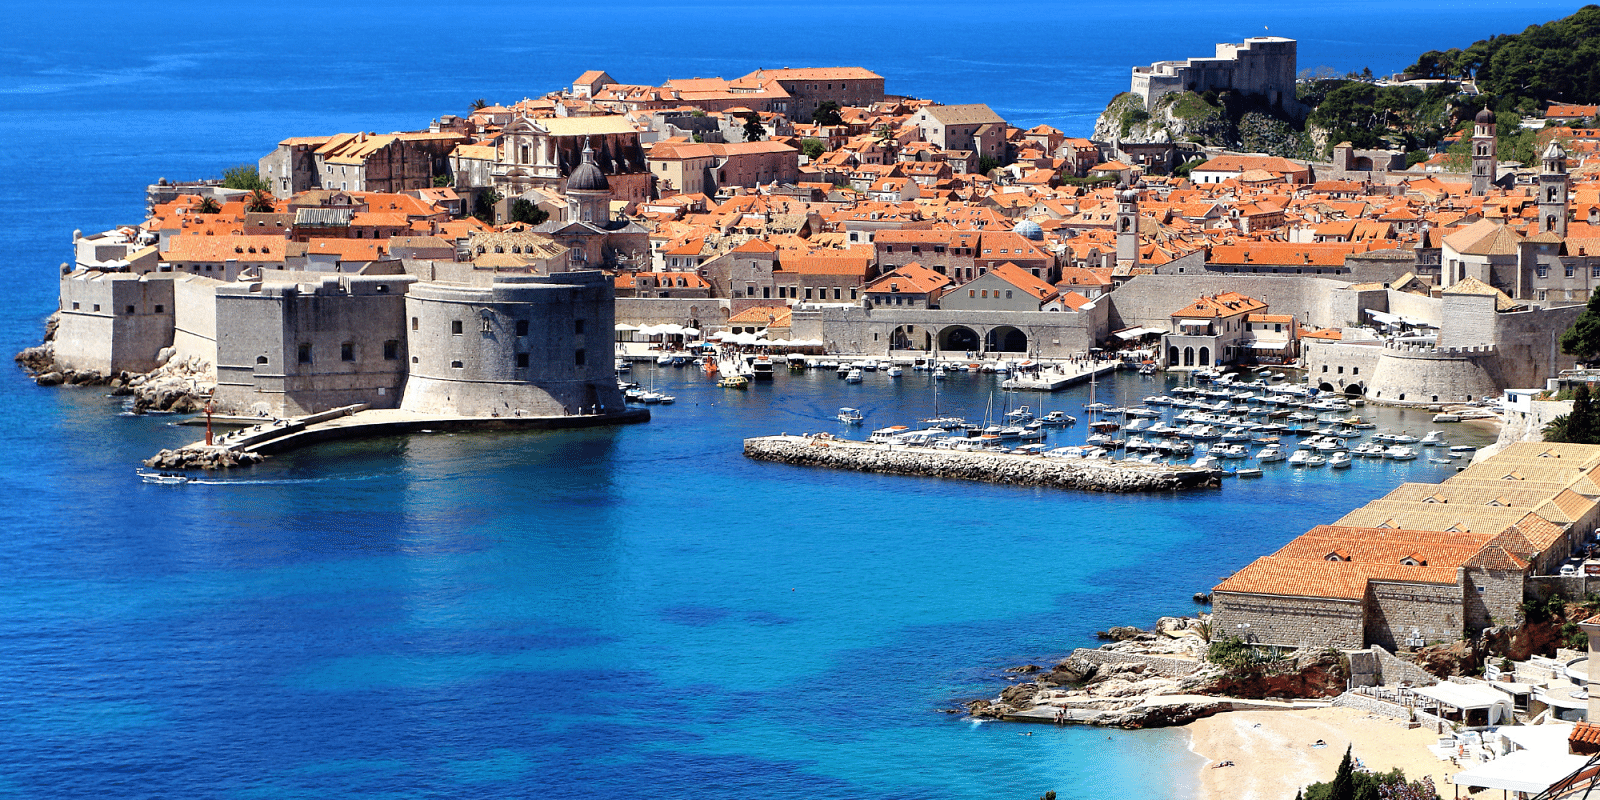 Unajmite brod u Zaton Dubrovnik